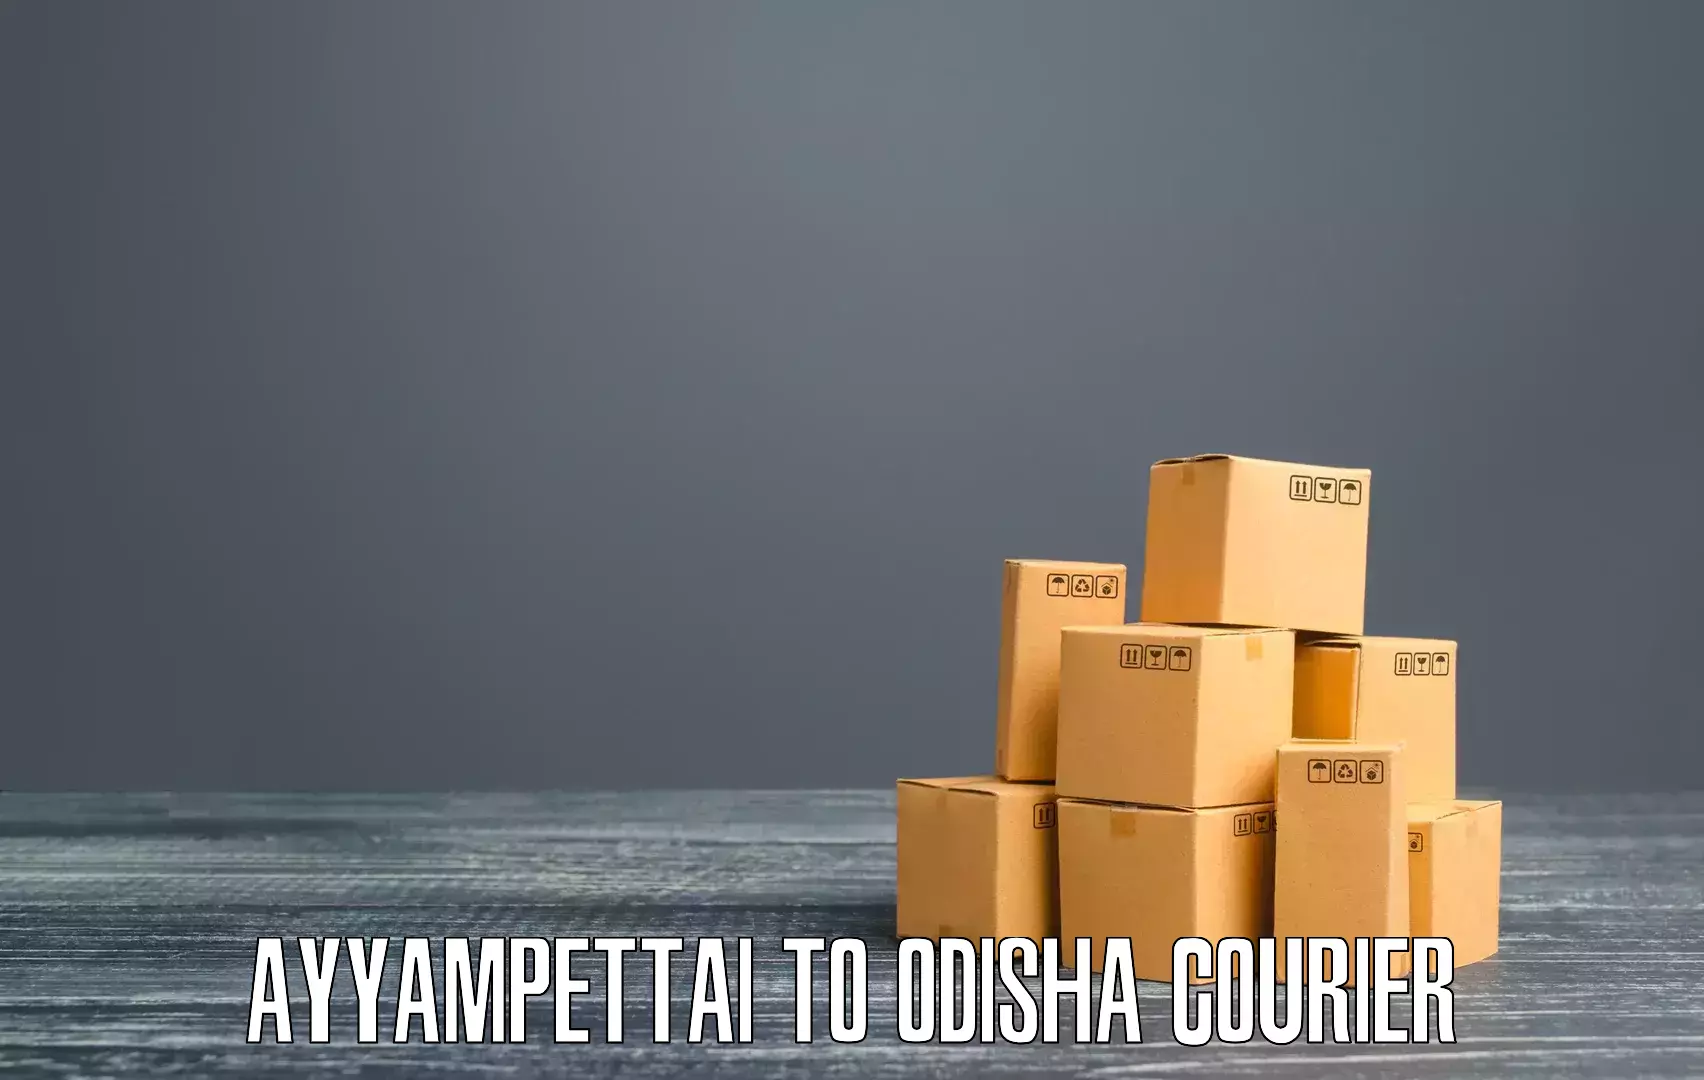 High-efficiency logistics Ayyampettai to Dunguripali